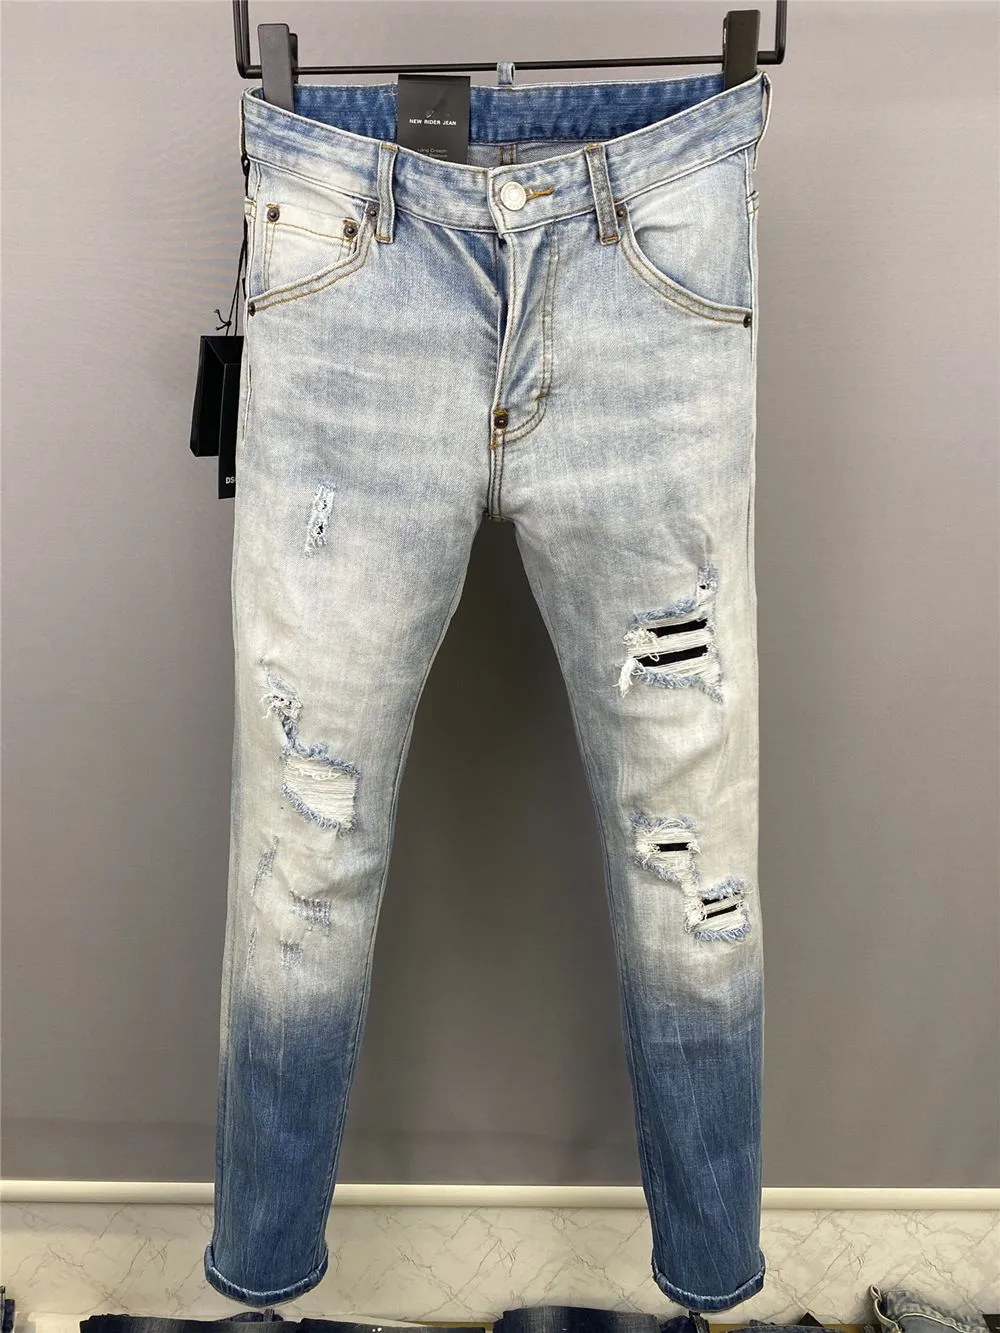 Moda italiana jeans casuais masculinos europeus e americanos de alta qualidade lavados à mão polidos qualidade otimizada 9857